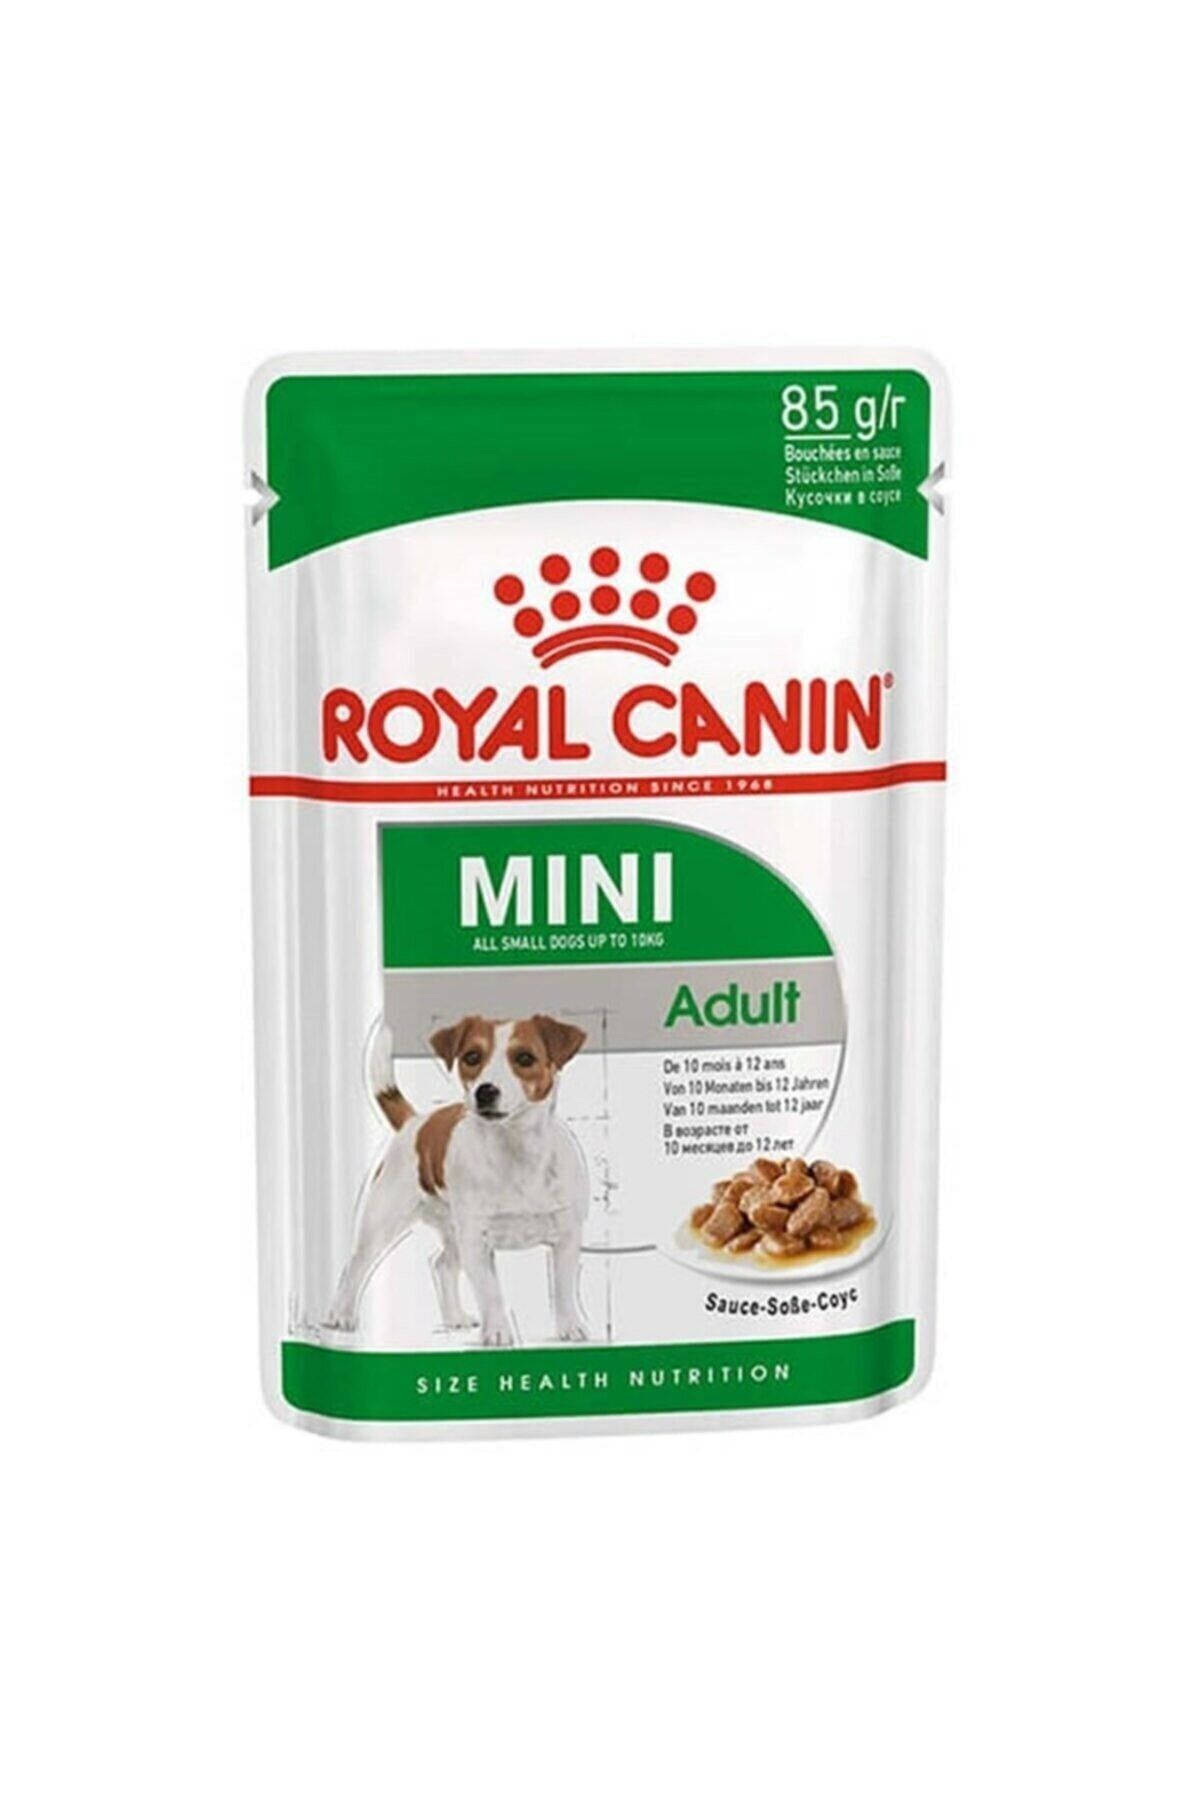 Royal Canin Neo Pet Market Mini Adult Küçük Irk Pouch Konserve 85 gr 12 Adet